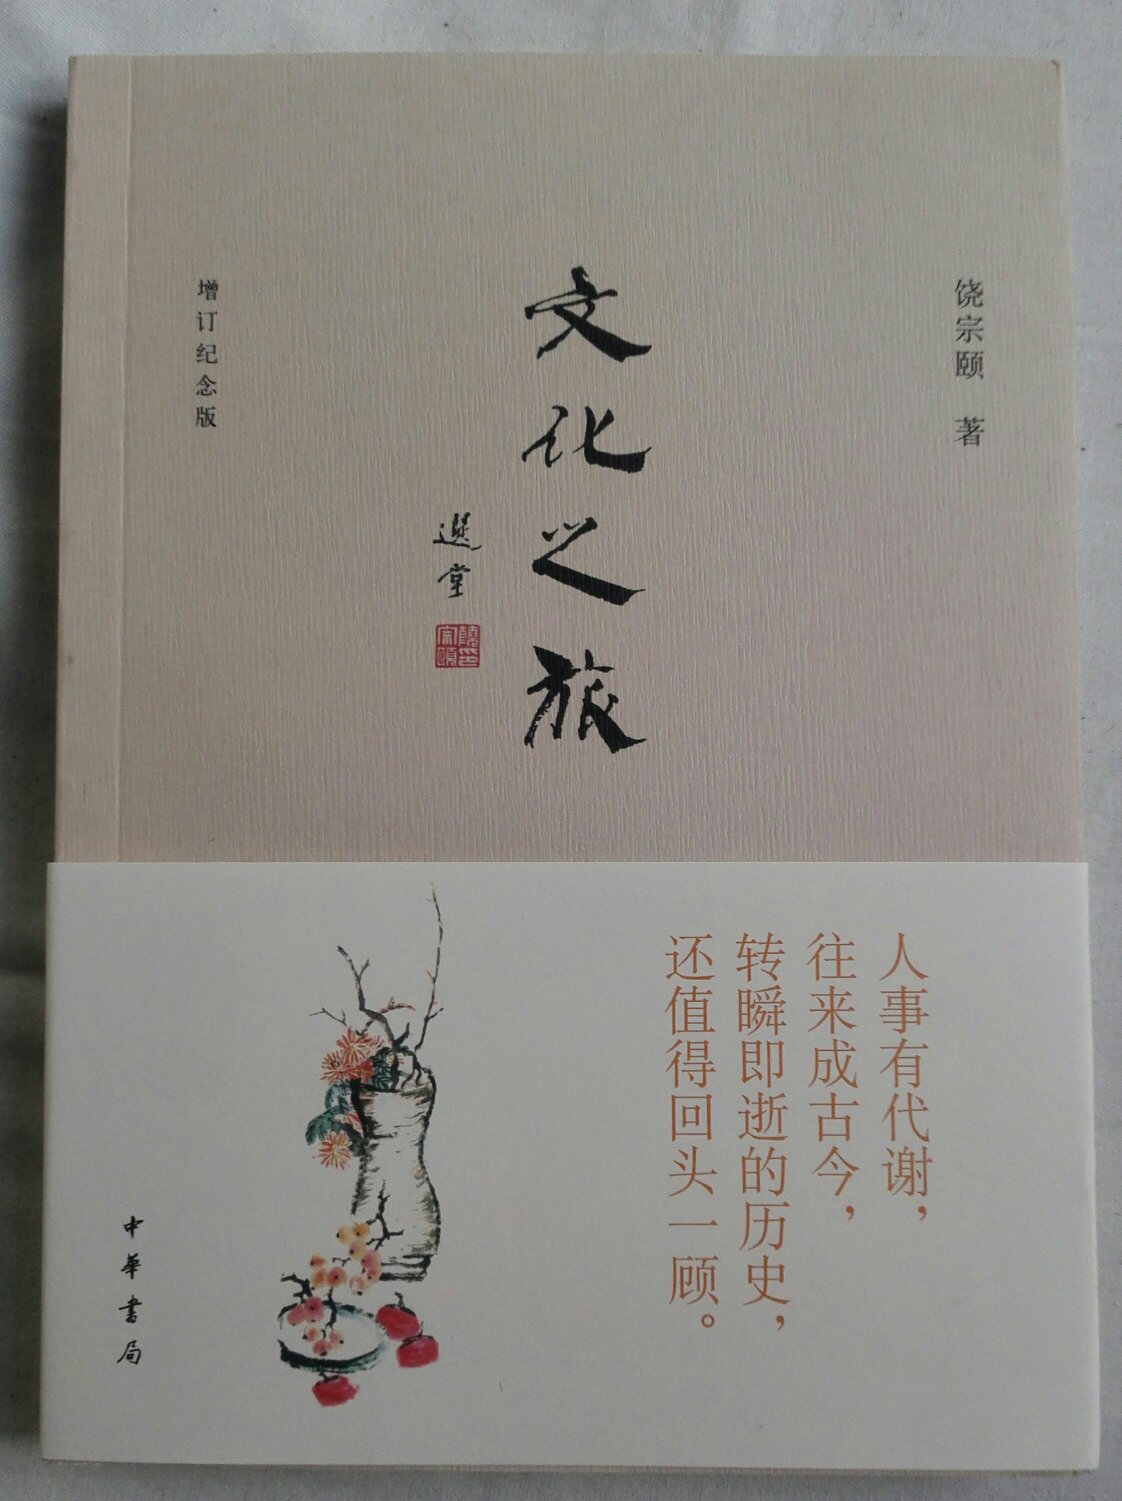 精美的小书，清雅秀美，虽然还没去读，相信一定很好。